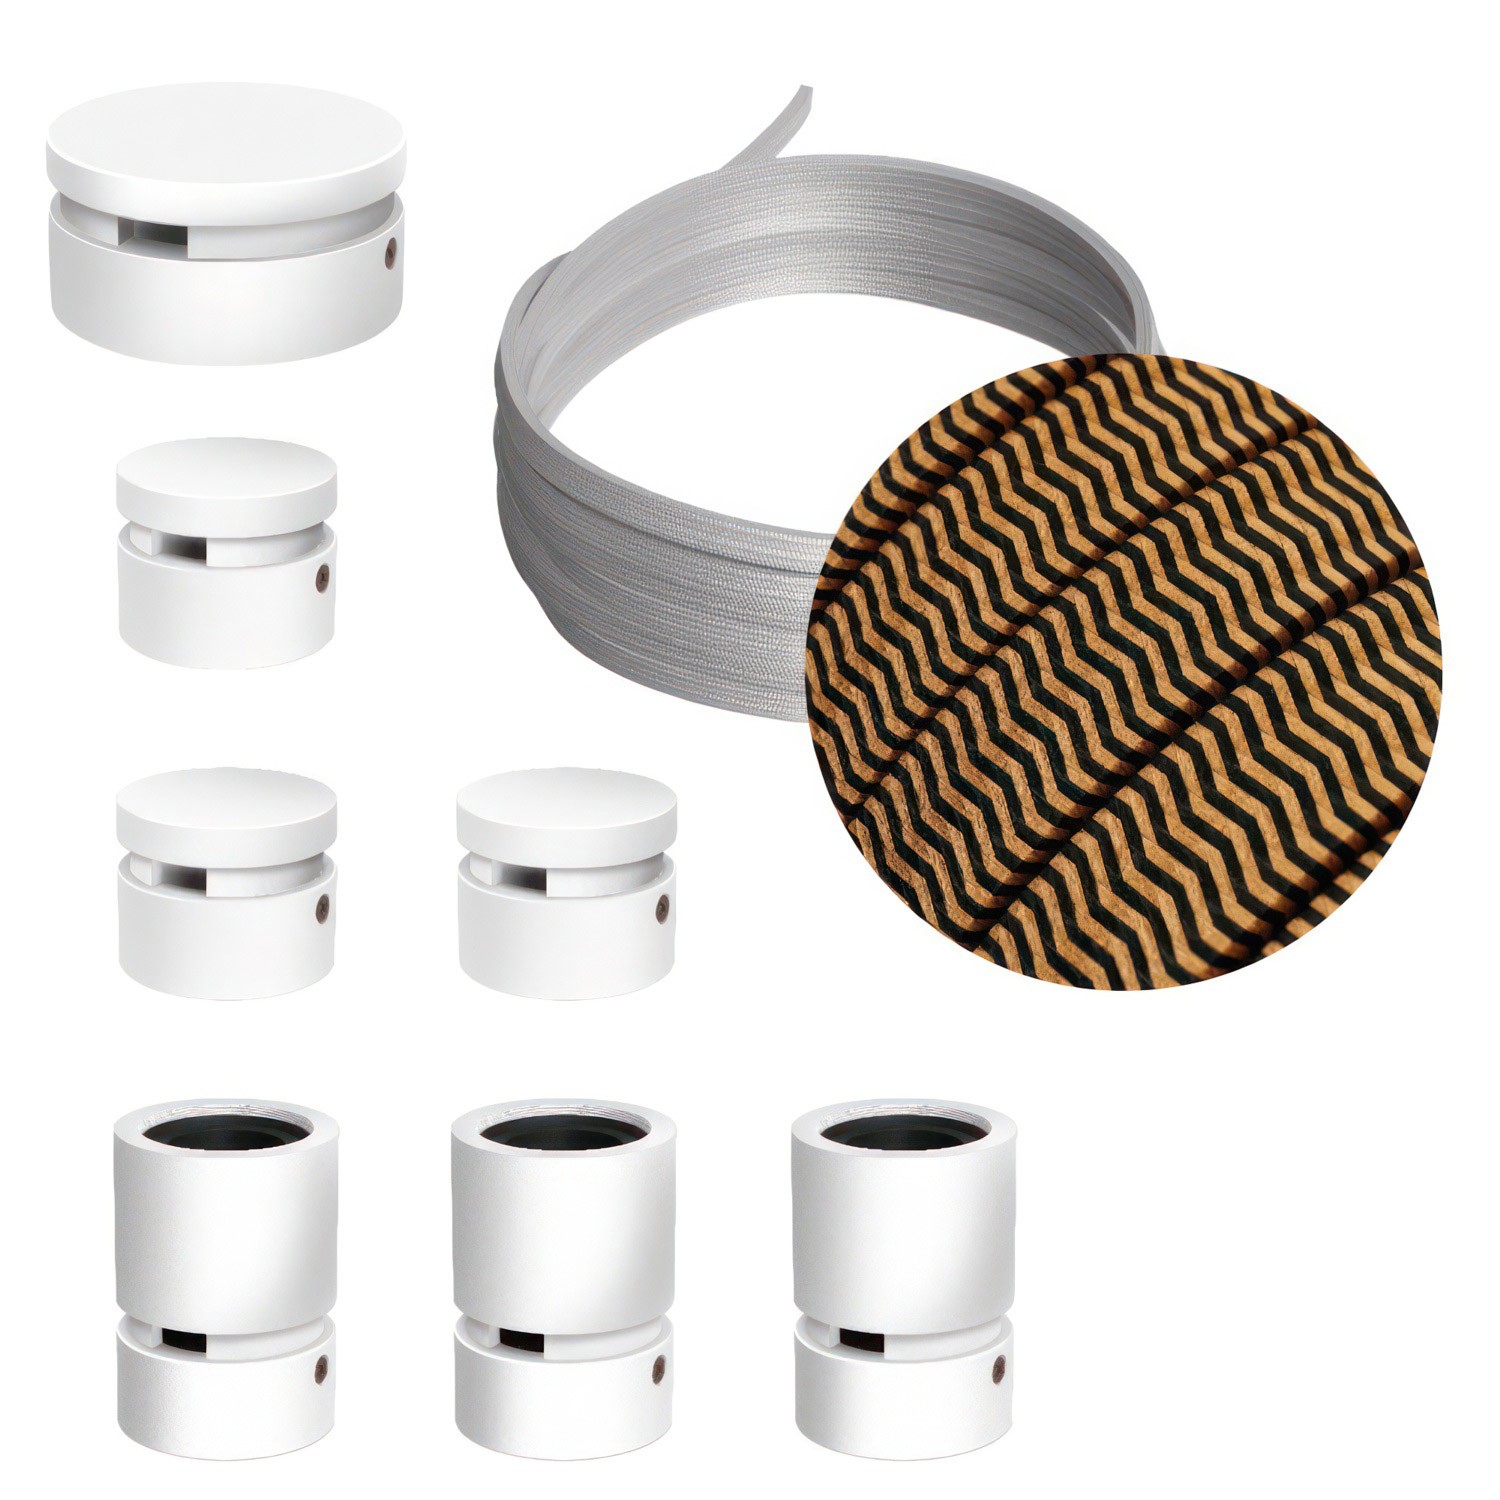 Kit Linear Filé System - con 5m cable textil guirnalda y 7 accesorios de madera pintados de blanco